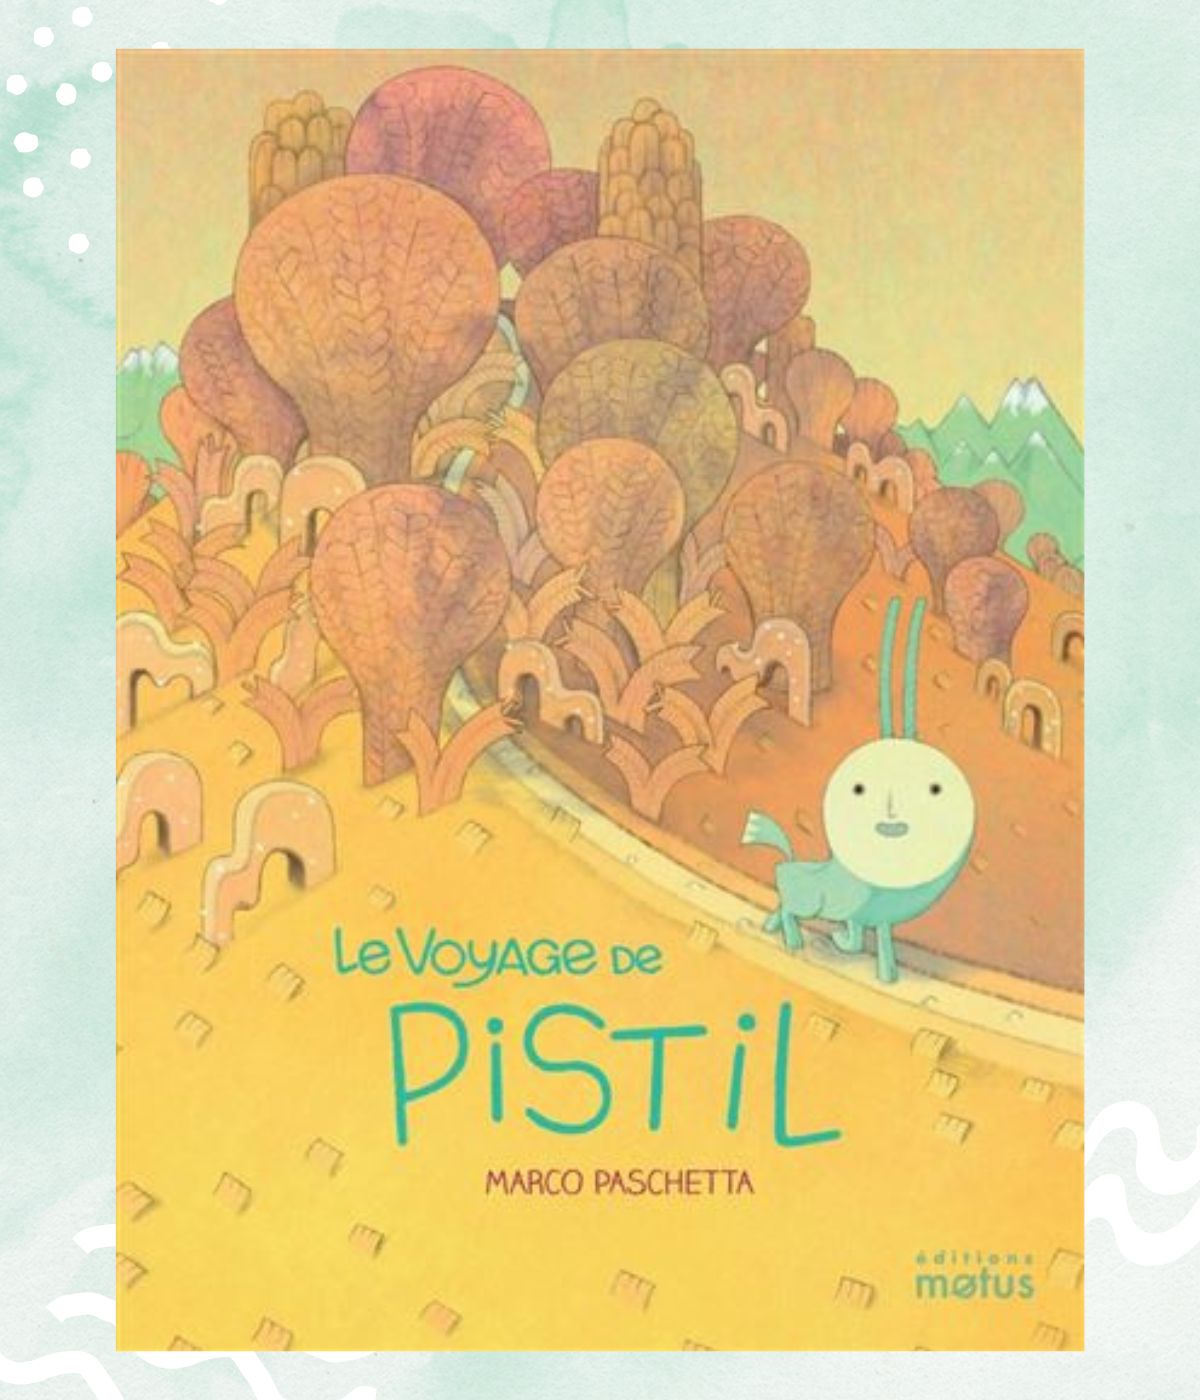 Le voyage de Pistil